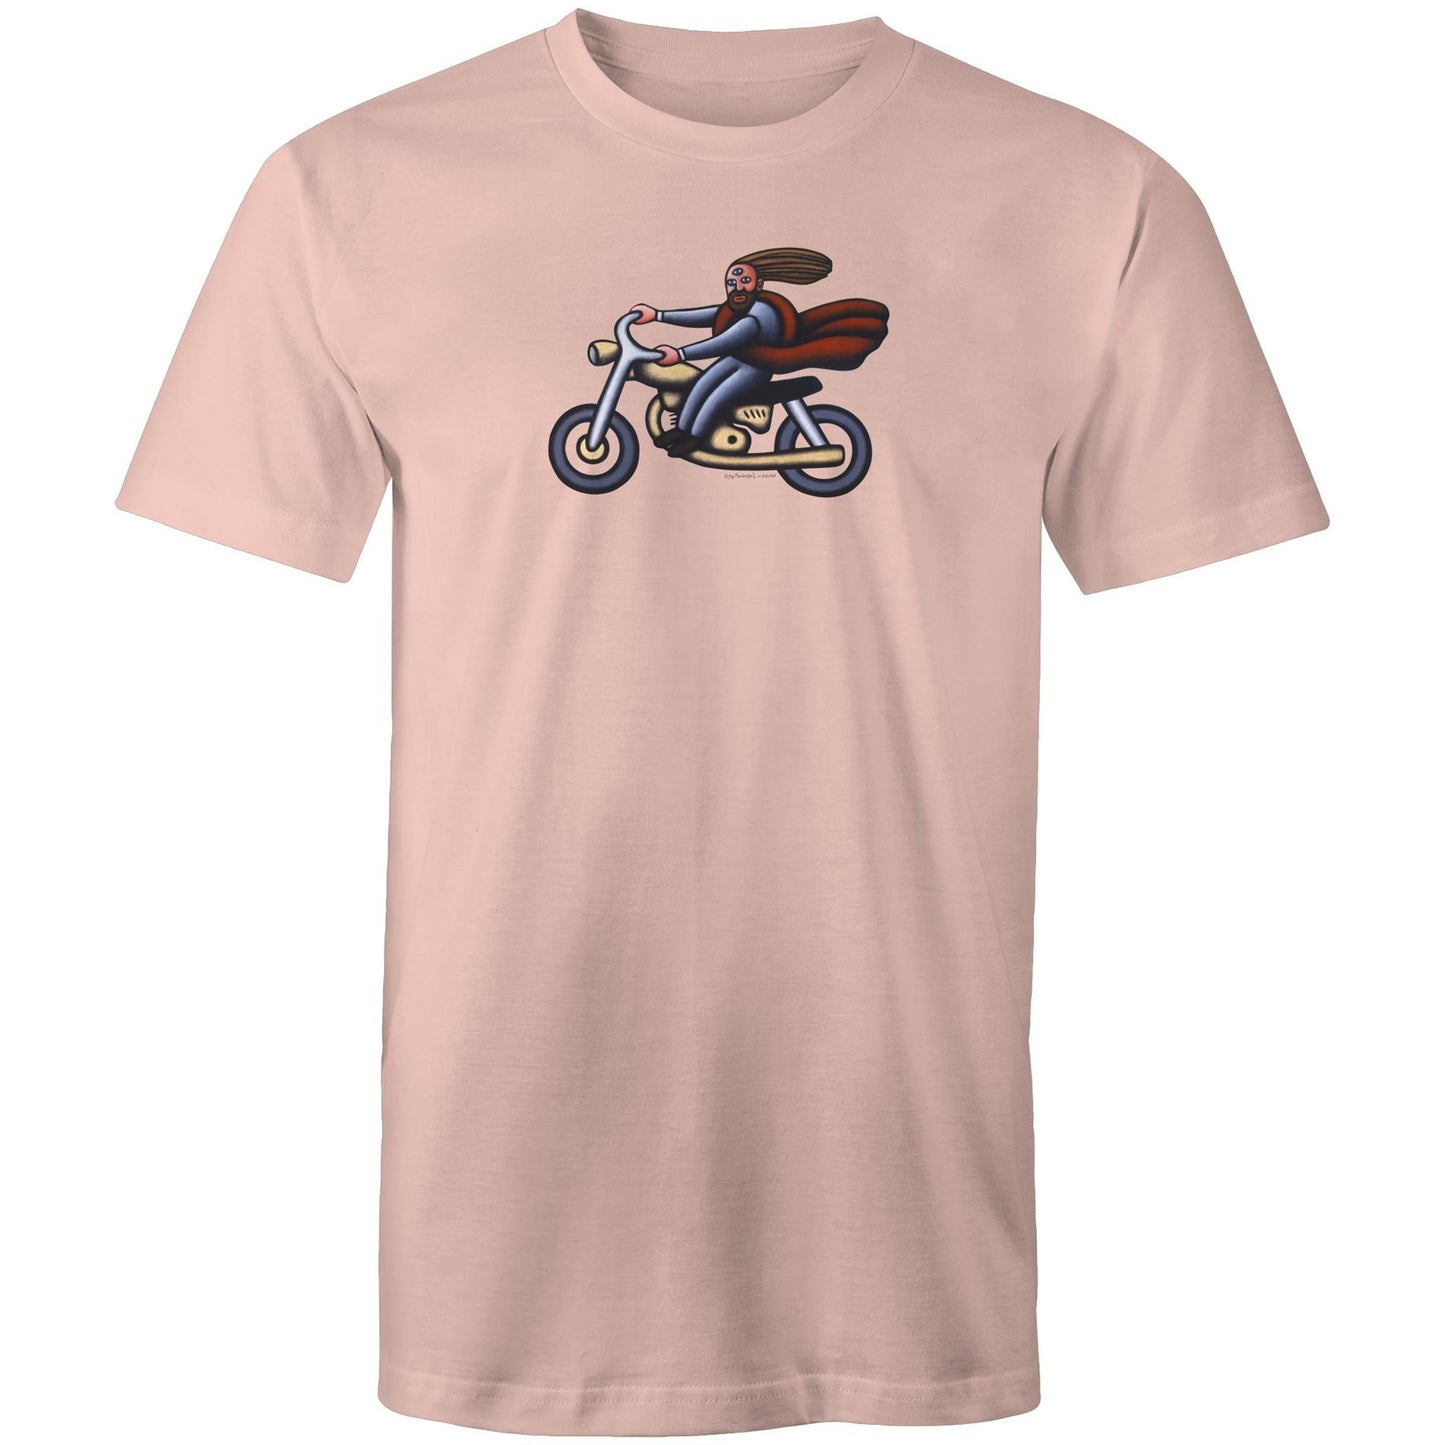 Australian Jesus on the Golden Motorbike T Shirts for Men (Unisex)